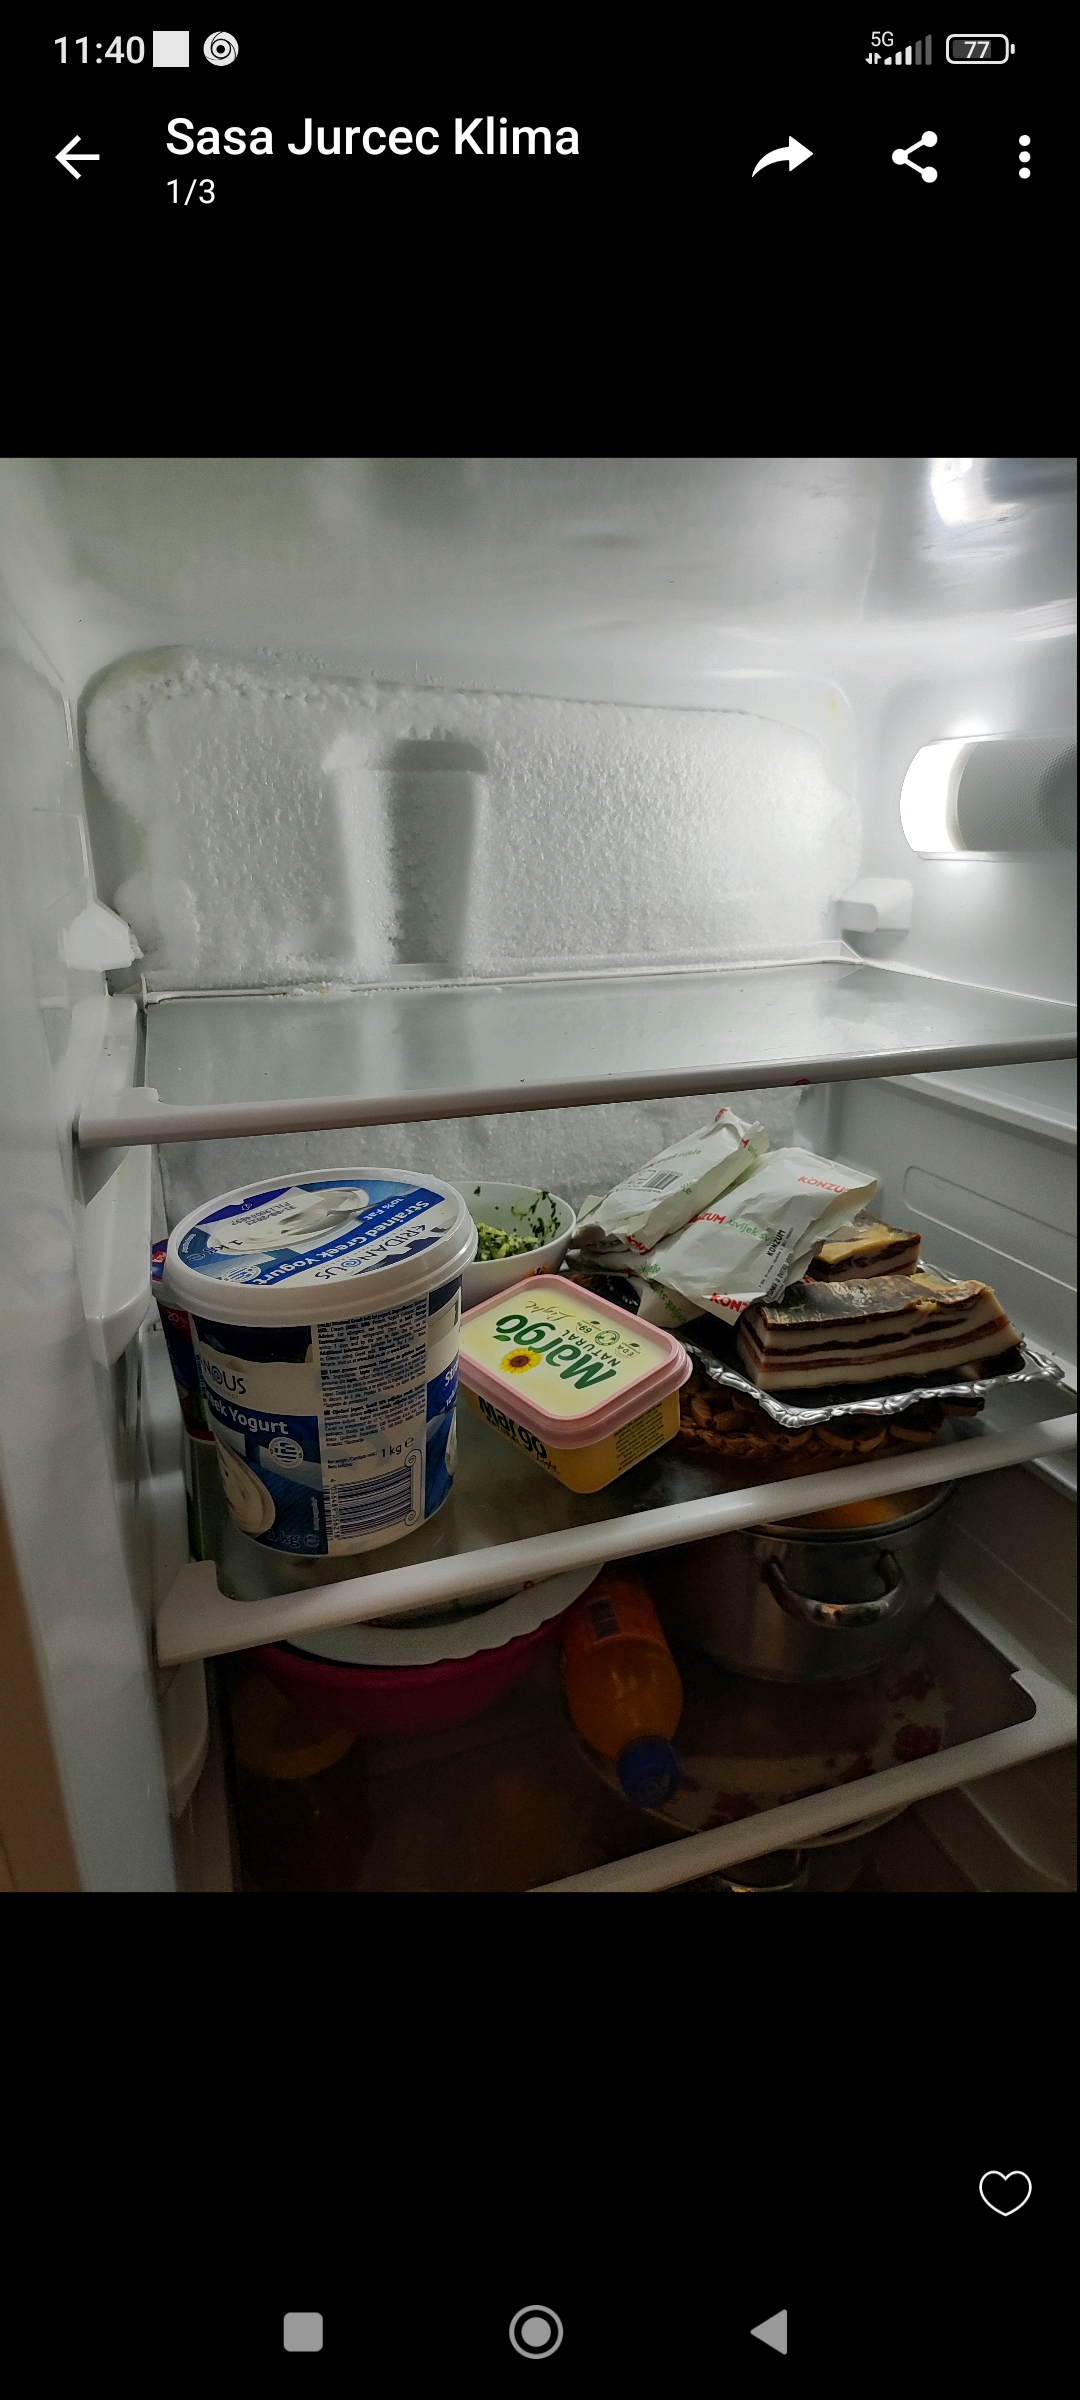 Se forma hielo en el fondo del frigorífico.
Imagen adjunta
¿Qué hacer?